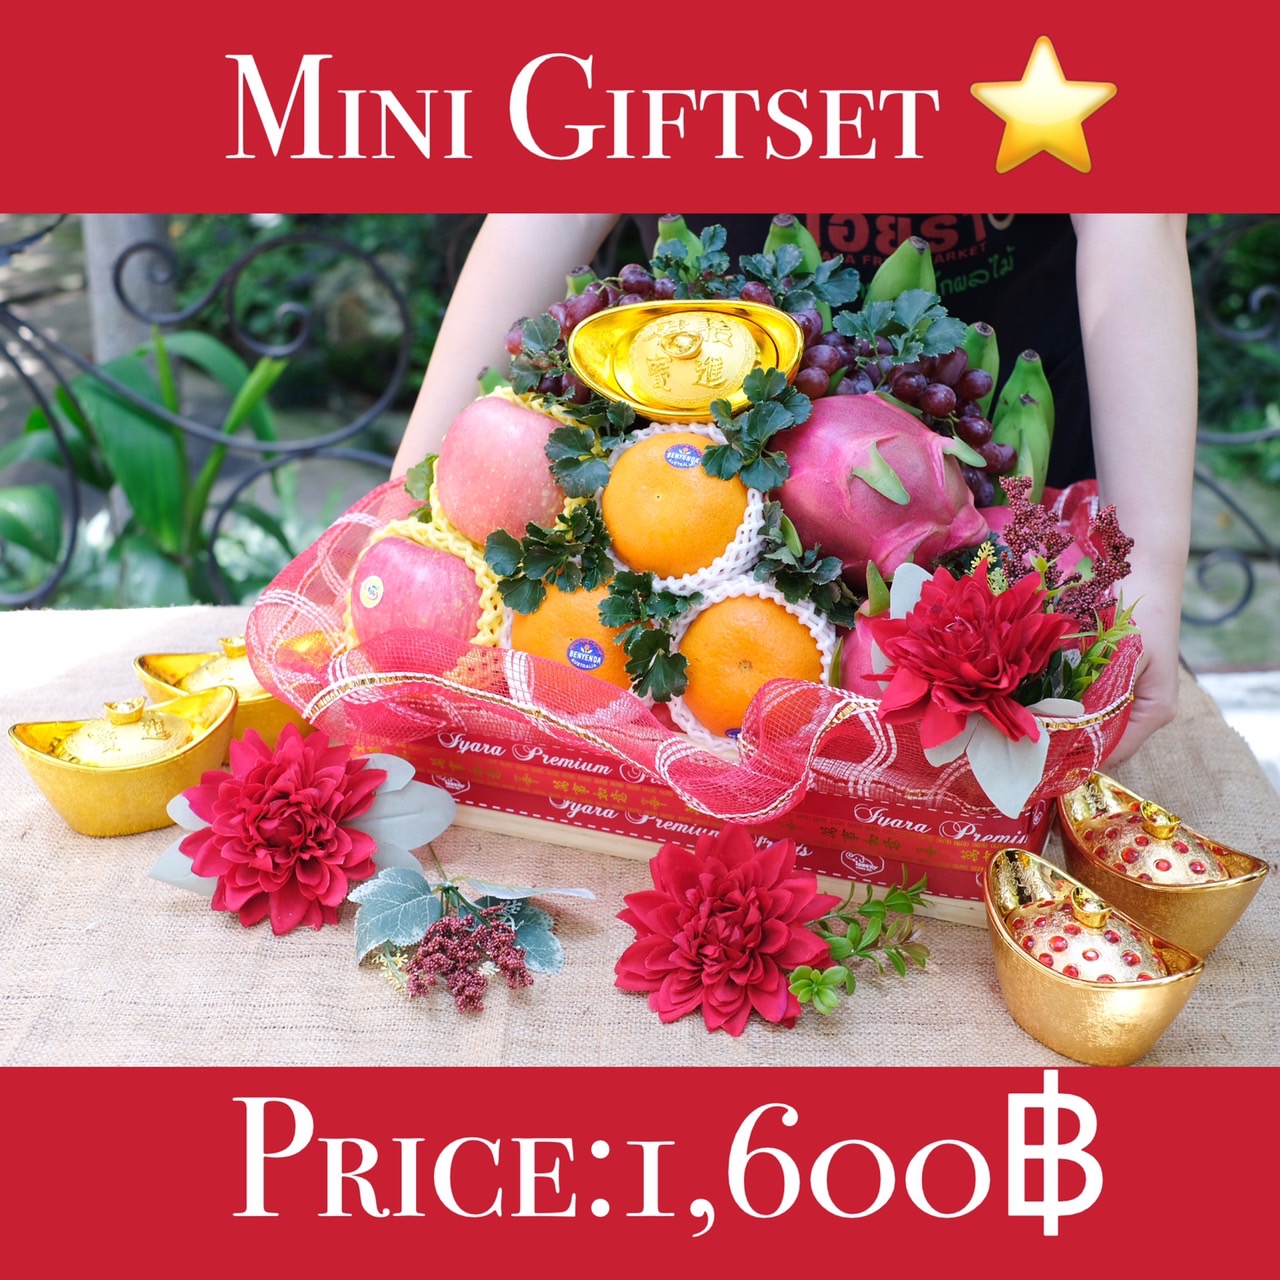 ชุดสารทจีน Mini Giftset (เล็ก)